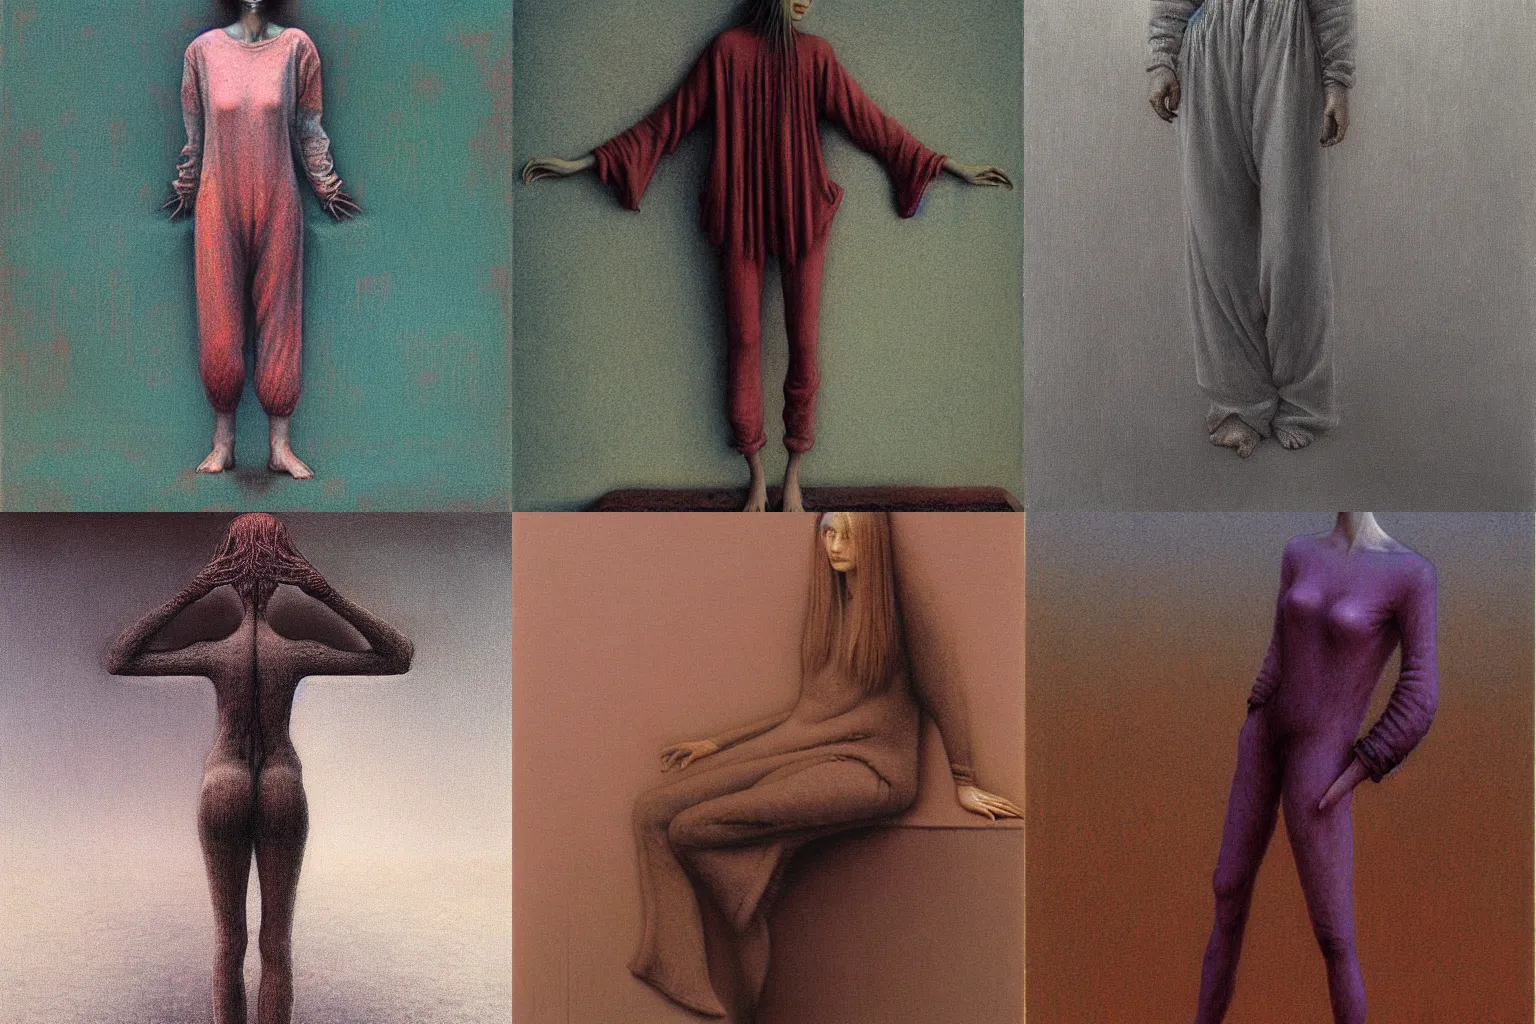 Prompt: full body portrait of female in pajamas by Beksinski